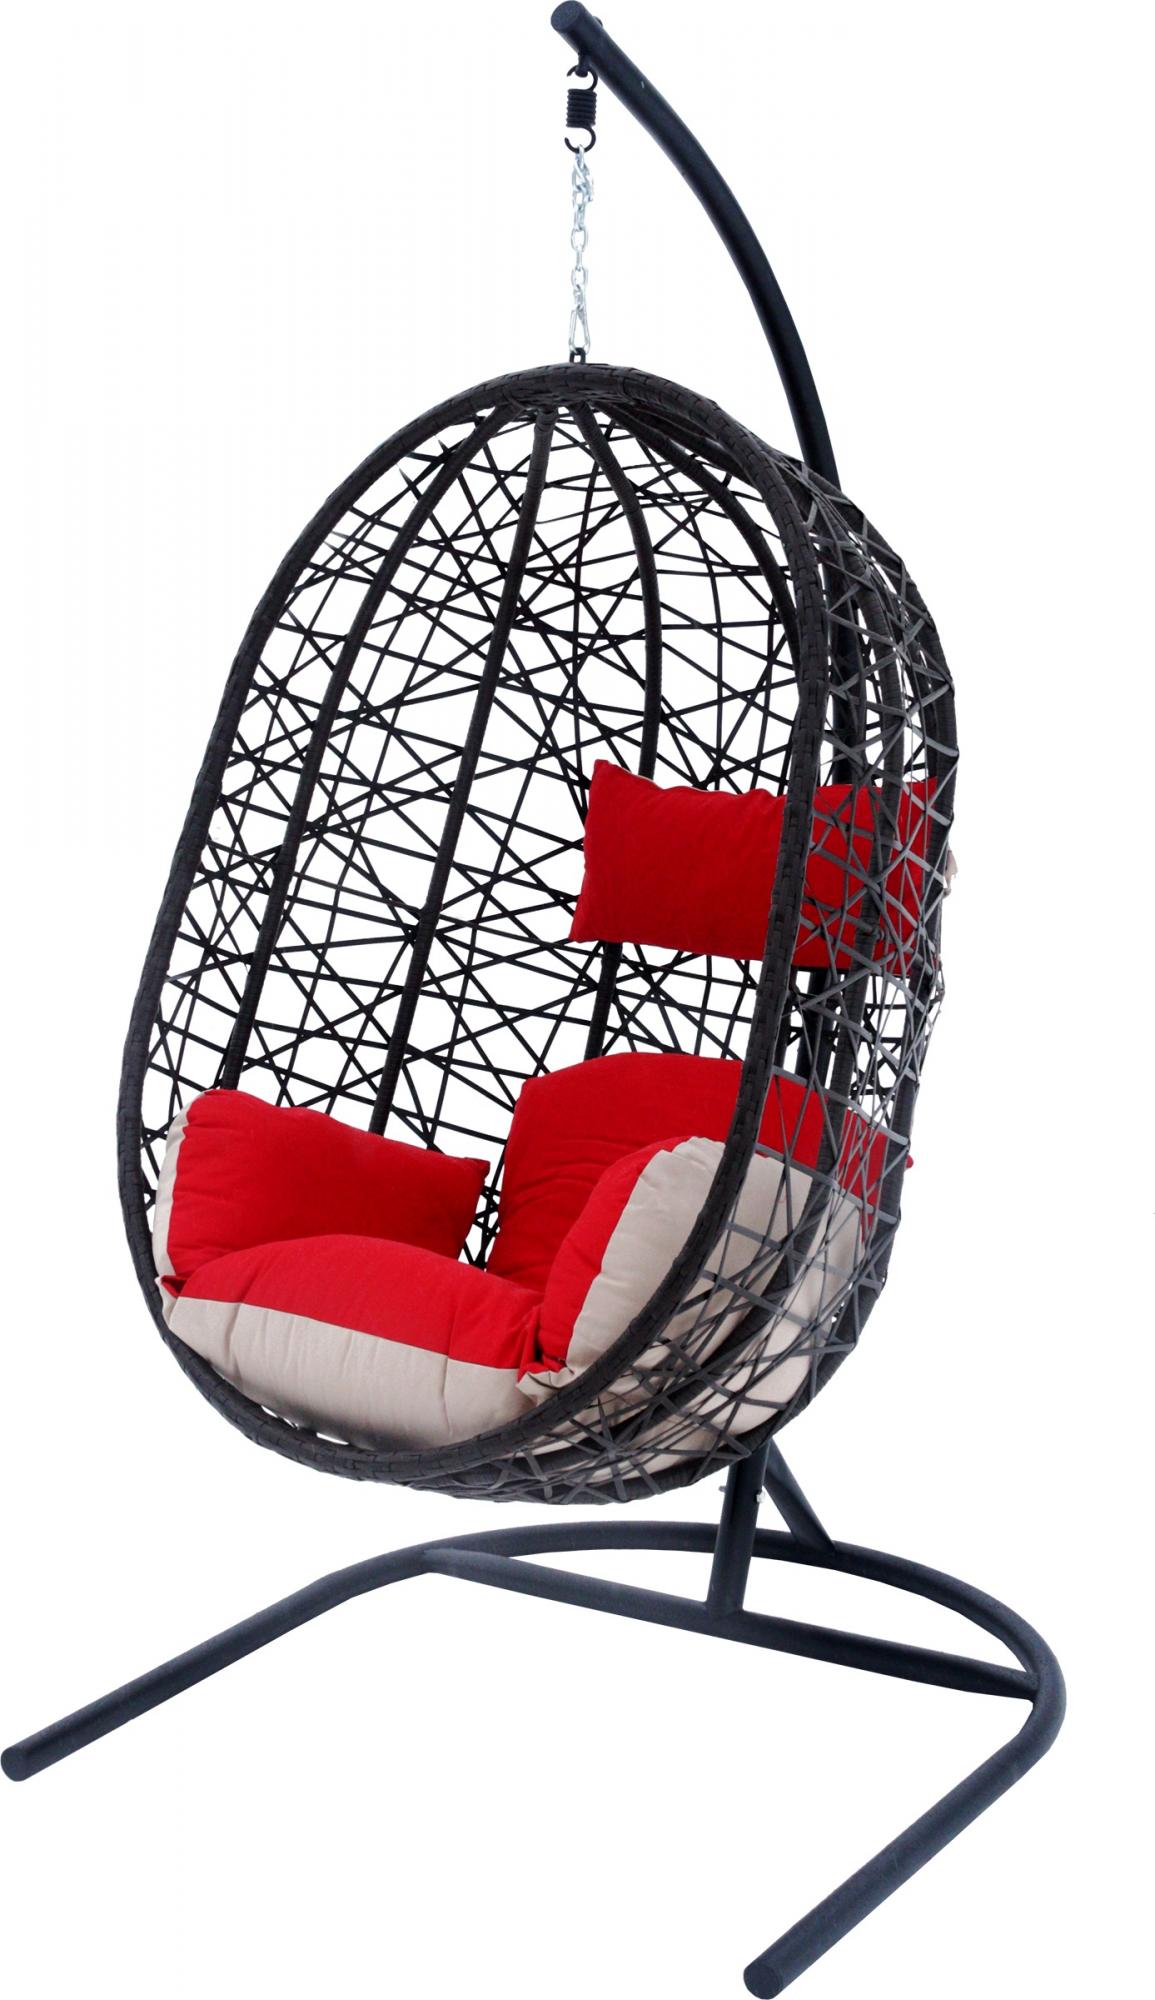 Подвесное кресло черное Garden Story Кокон XL D52-МТ003 красная подушка